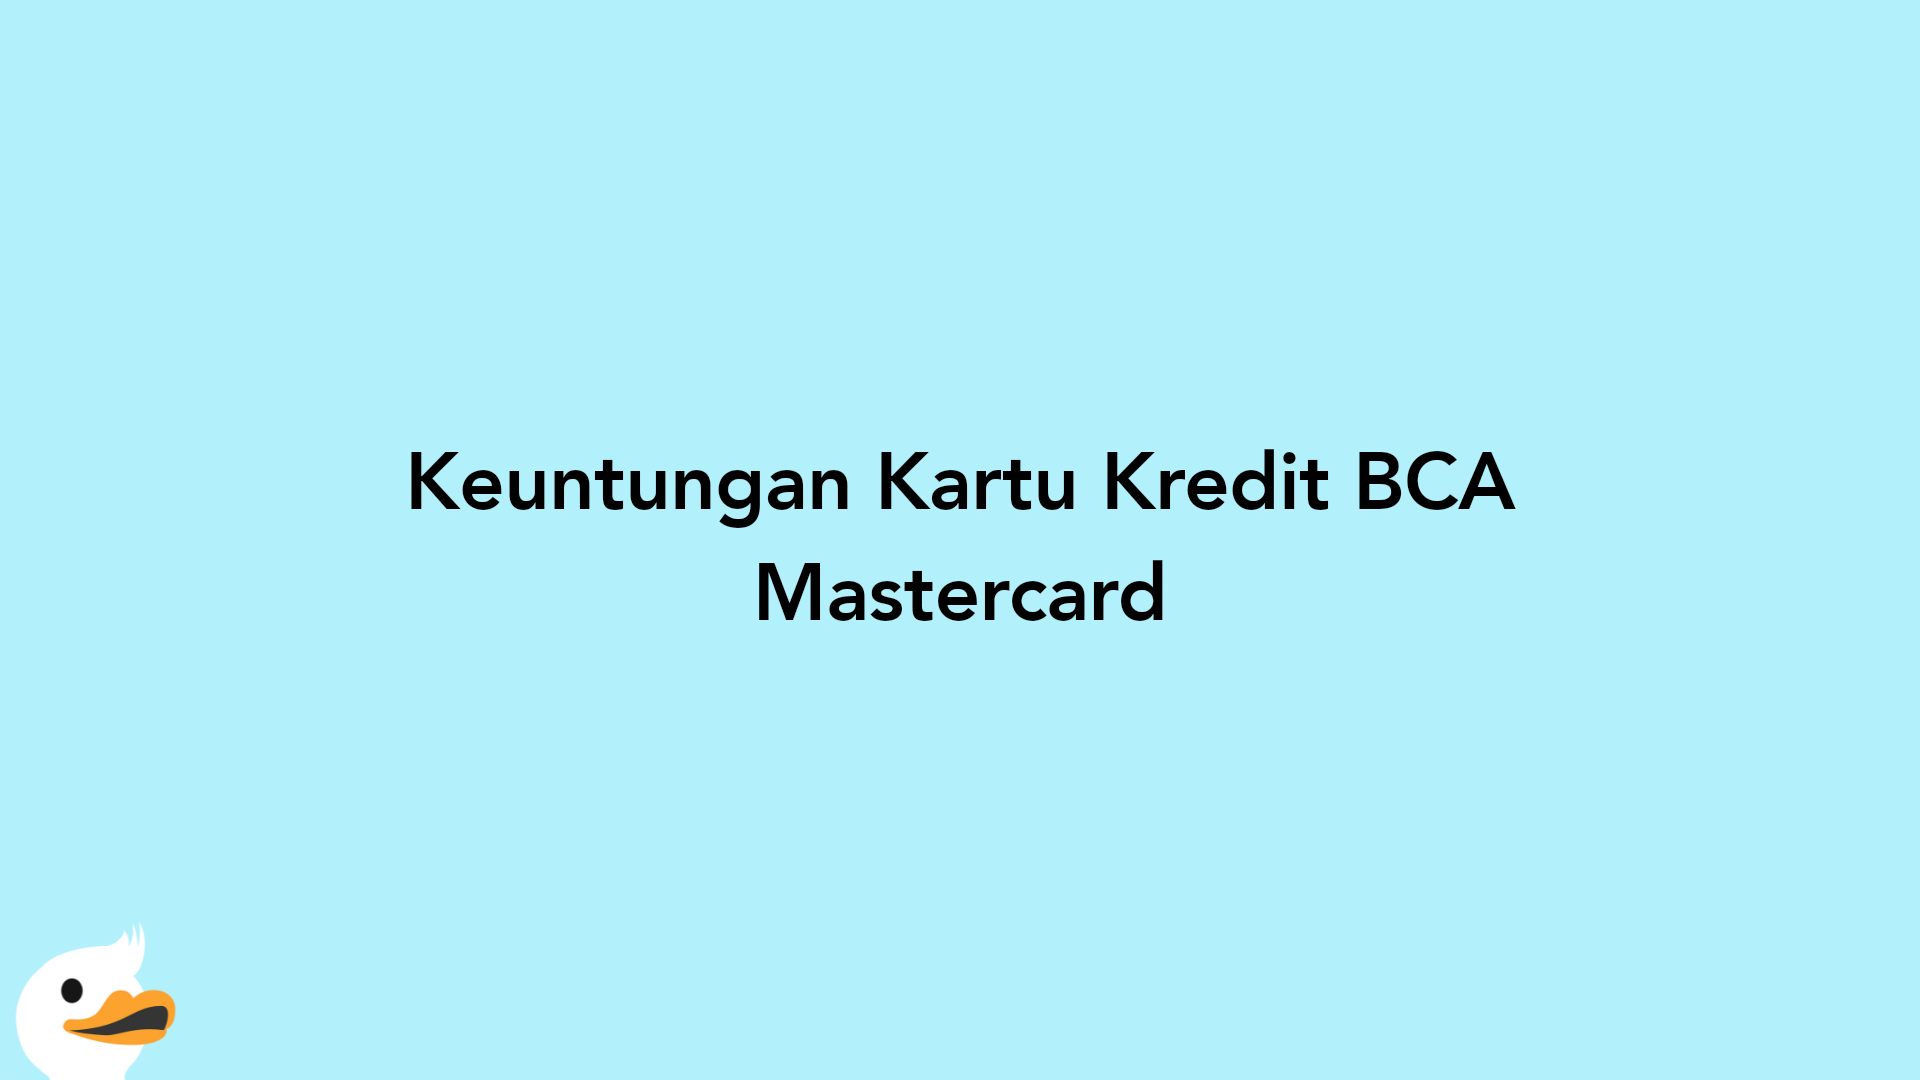 Keuntungan Kartu Kredit BCA Mastercard